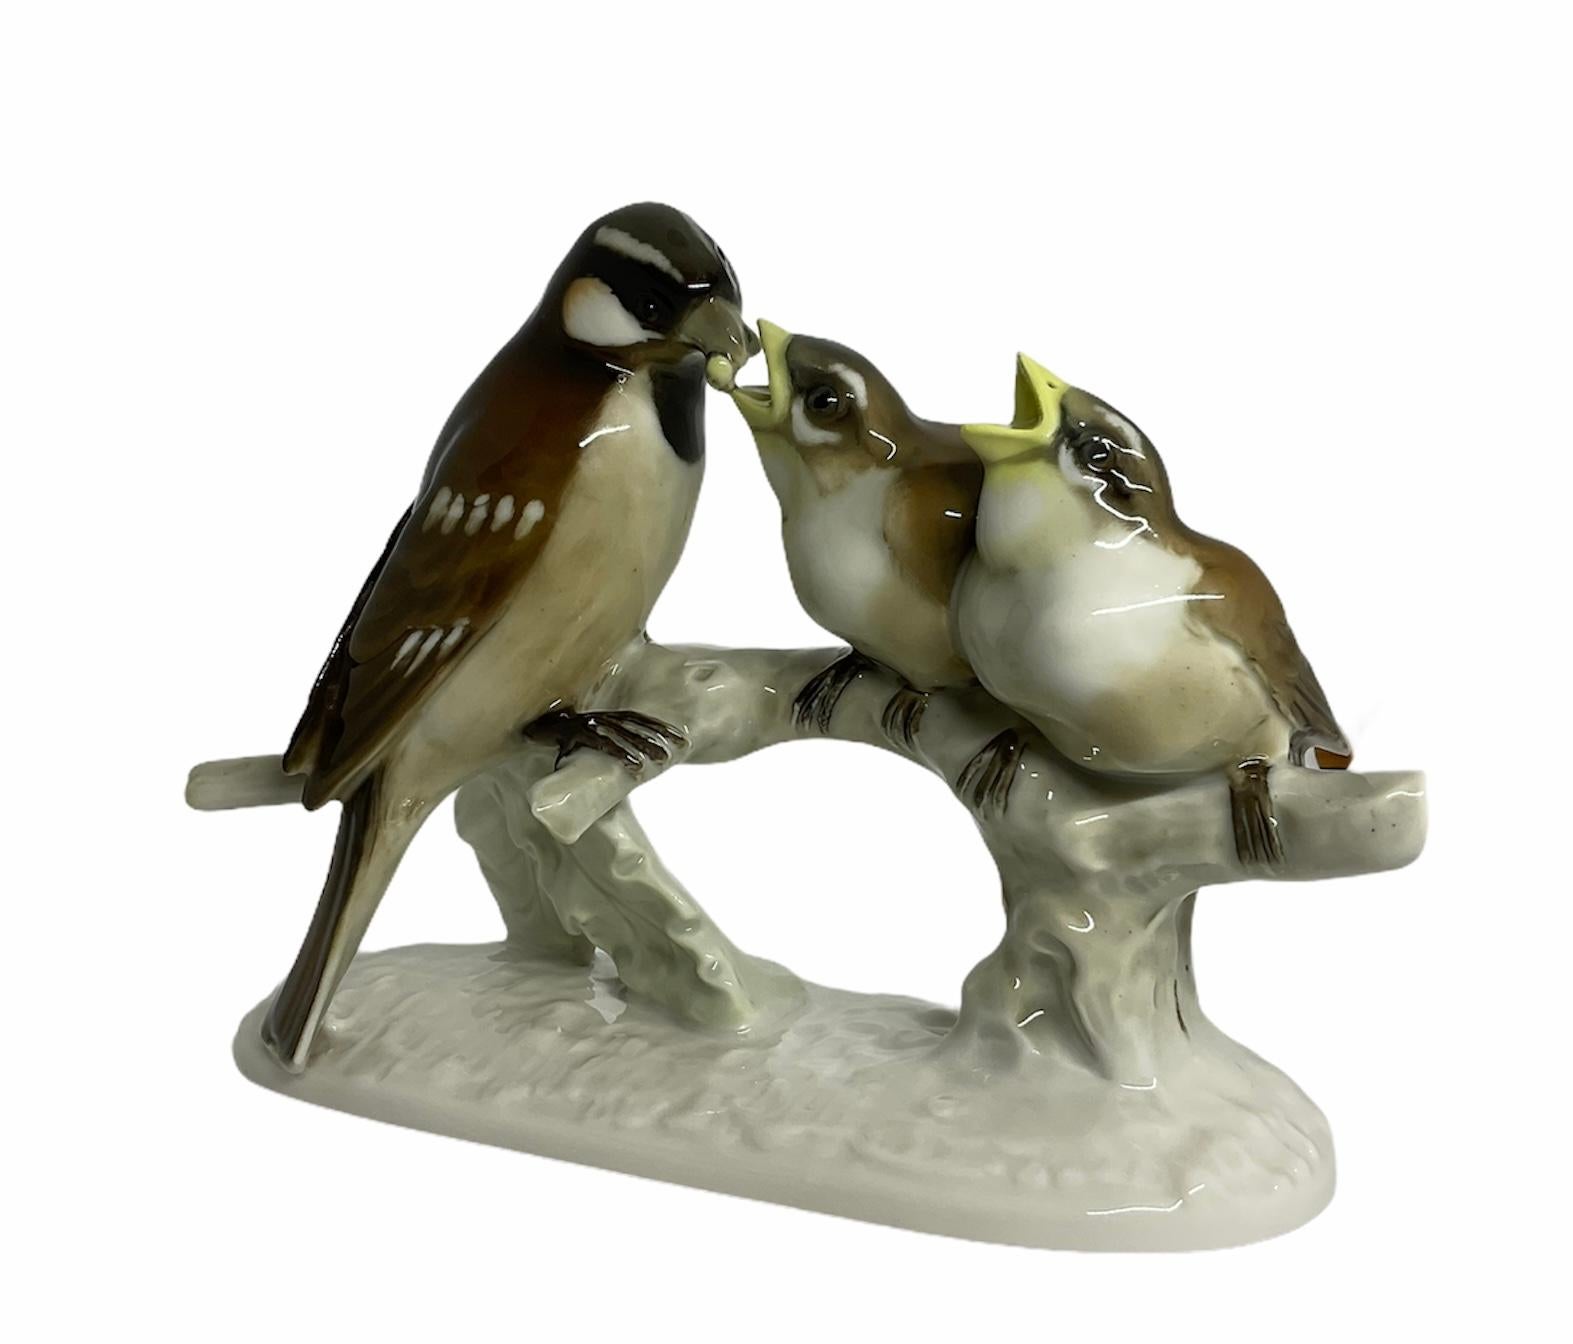 Il s'agit d'une sculpture/figurine de groupe en porcelaine de Hutschenreuther représentant une mère moineau nourrissant un de ses deux bébés oiseaux. Ils sont peints à la main en noir et chocolat foncé à l'arrière et en blanc à l'avant. Les pics des